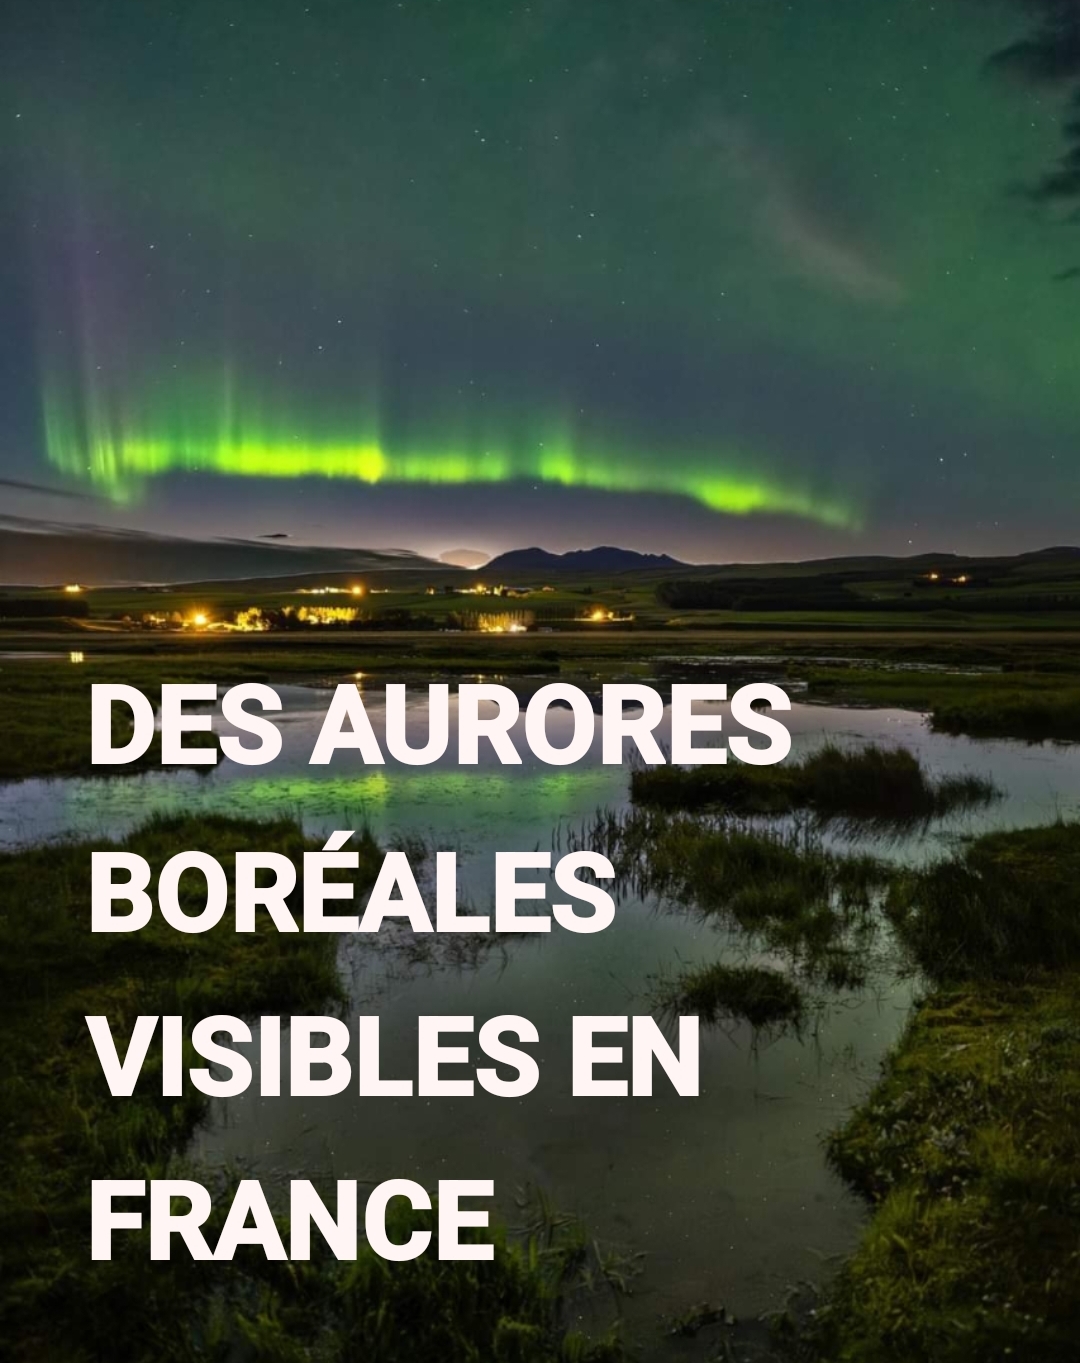 Des aurores boréales visibles en France